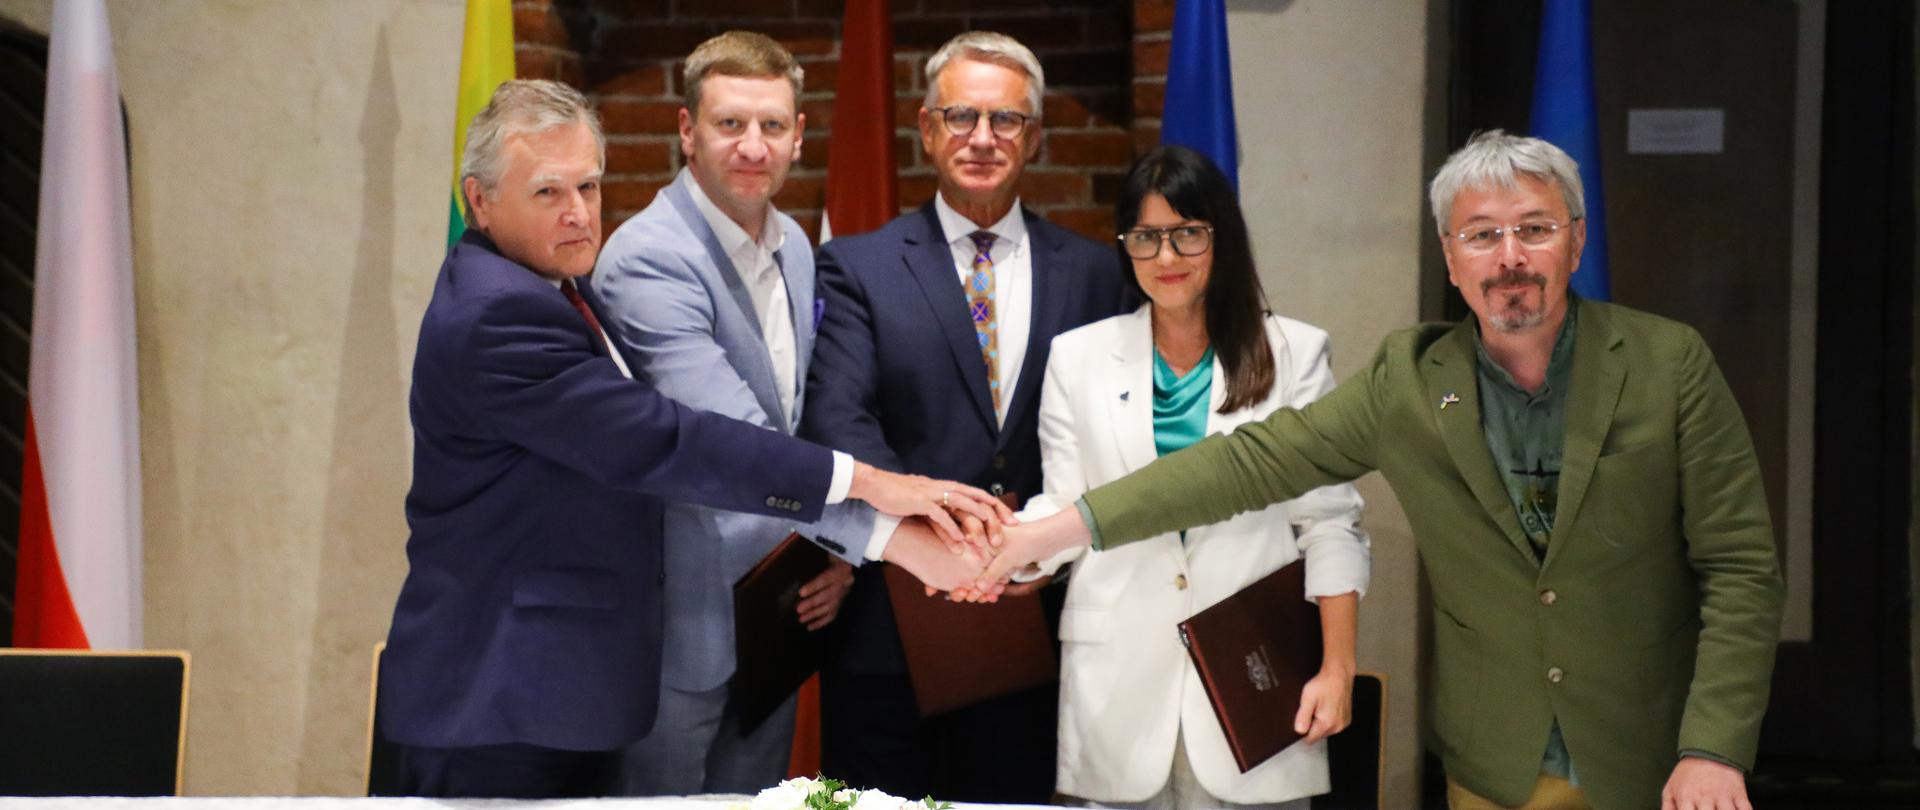 Wspólna deklaracja ministrów kultury Polski, Łotwy, Litwy, Estonii i Ukrainy o międzynarodowym wsparciu dla Ukrainy, fot. Danuta Matloch
